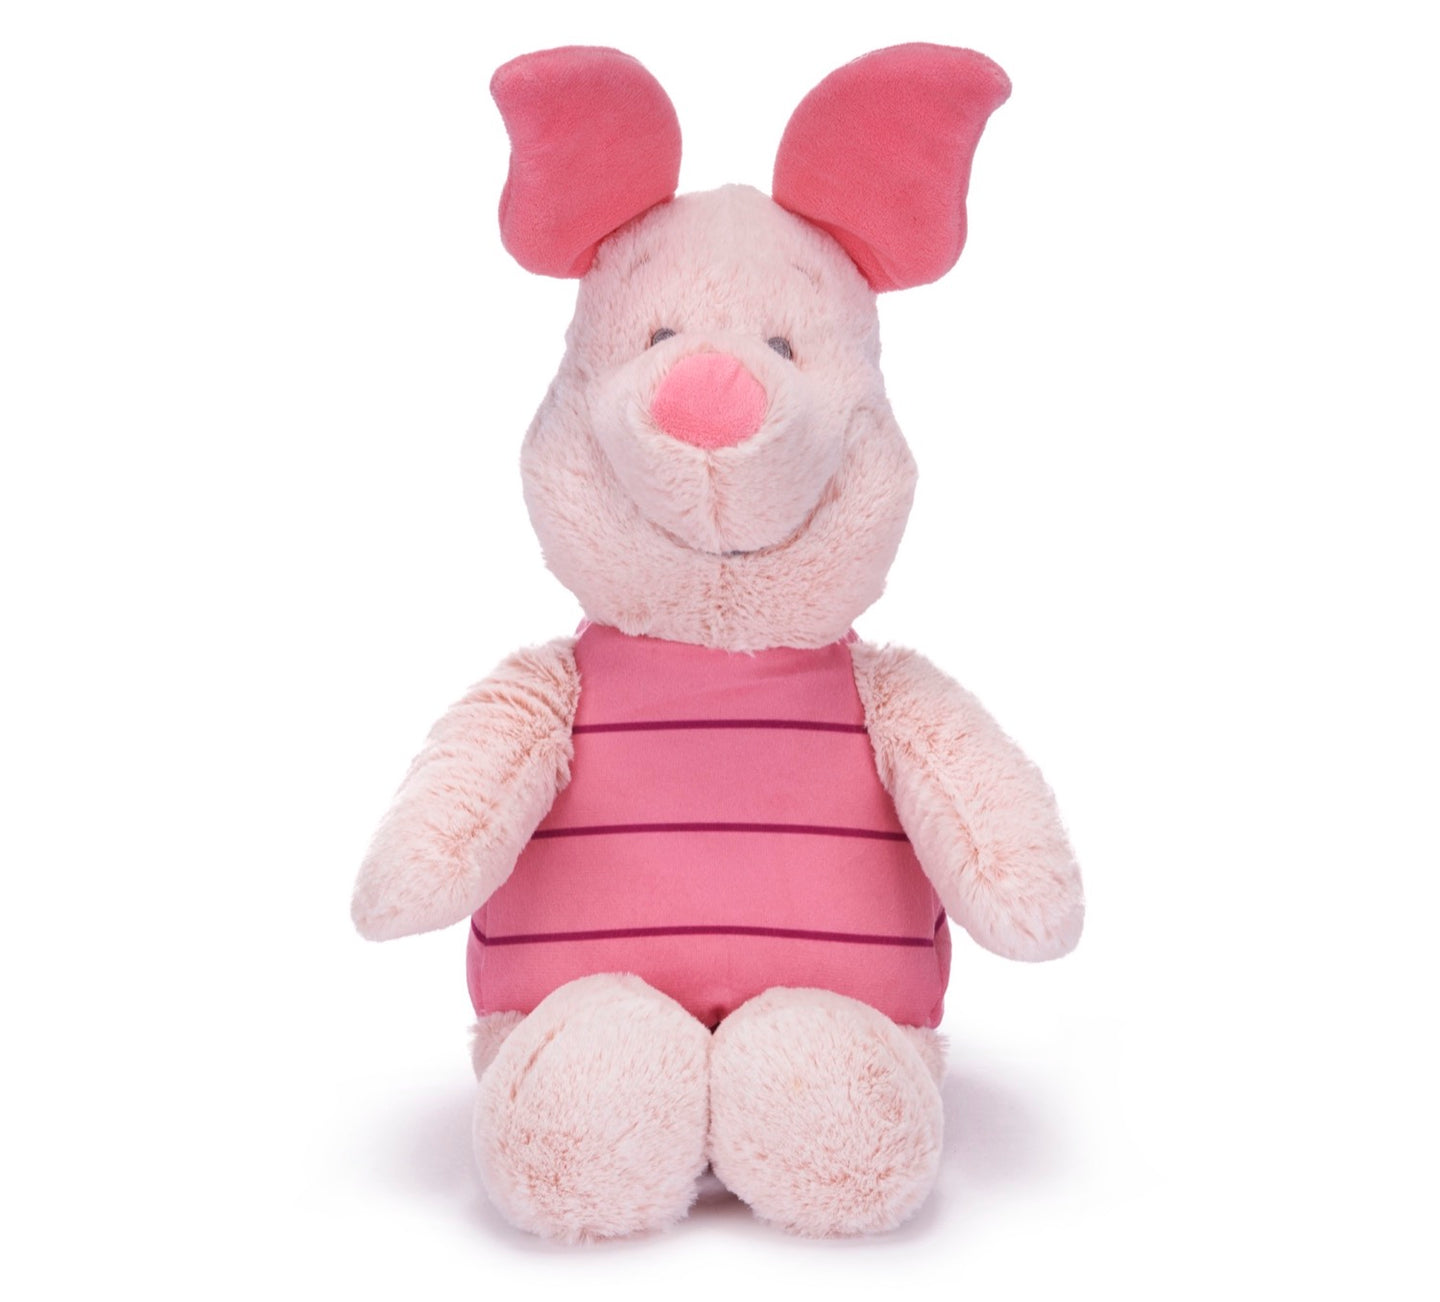 Winnie The Pooh Soft Plush Cuddly Toy 12